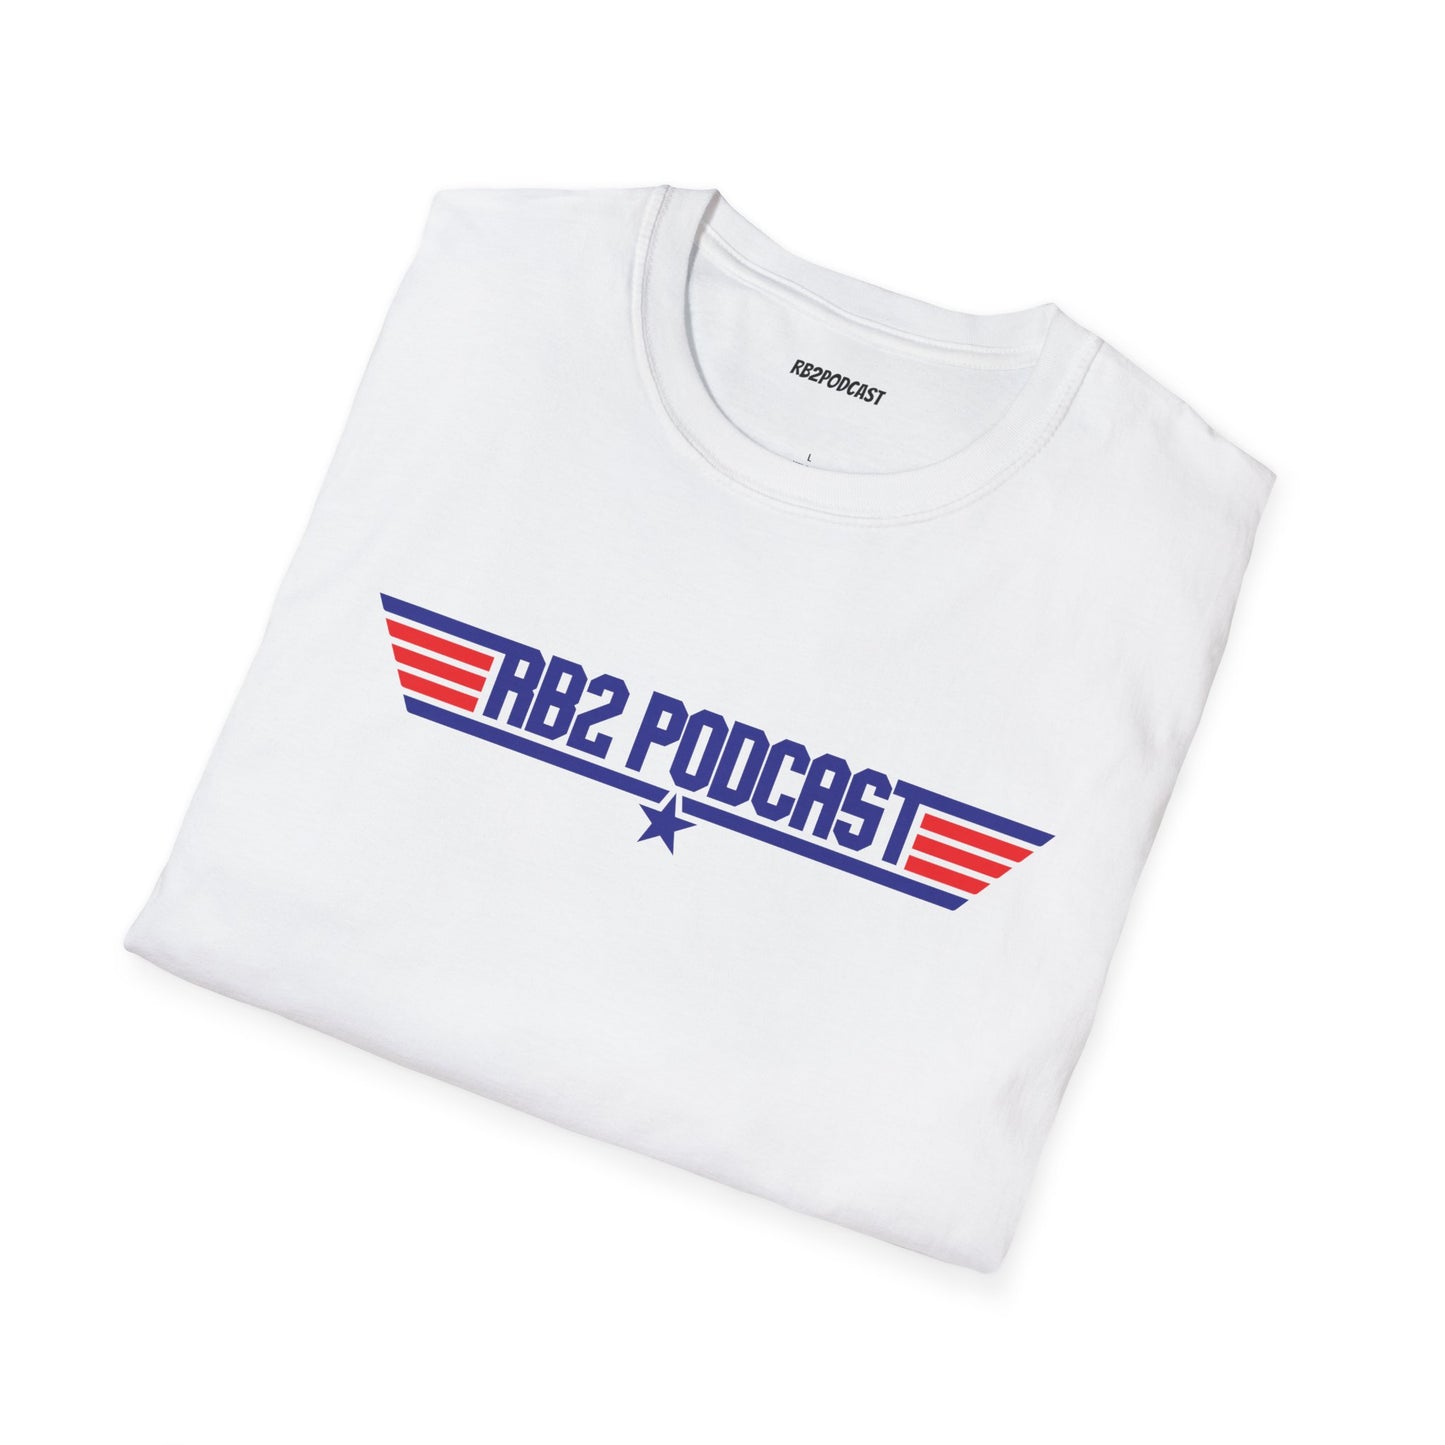 RB2podcast Topgun T-Shirt